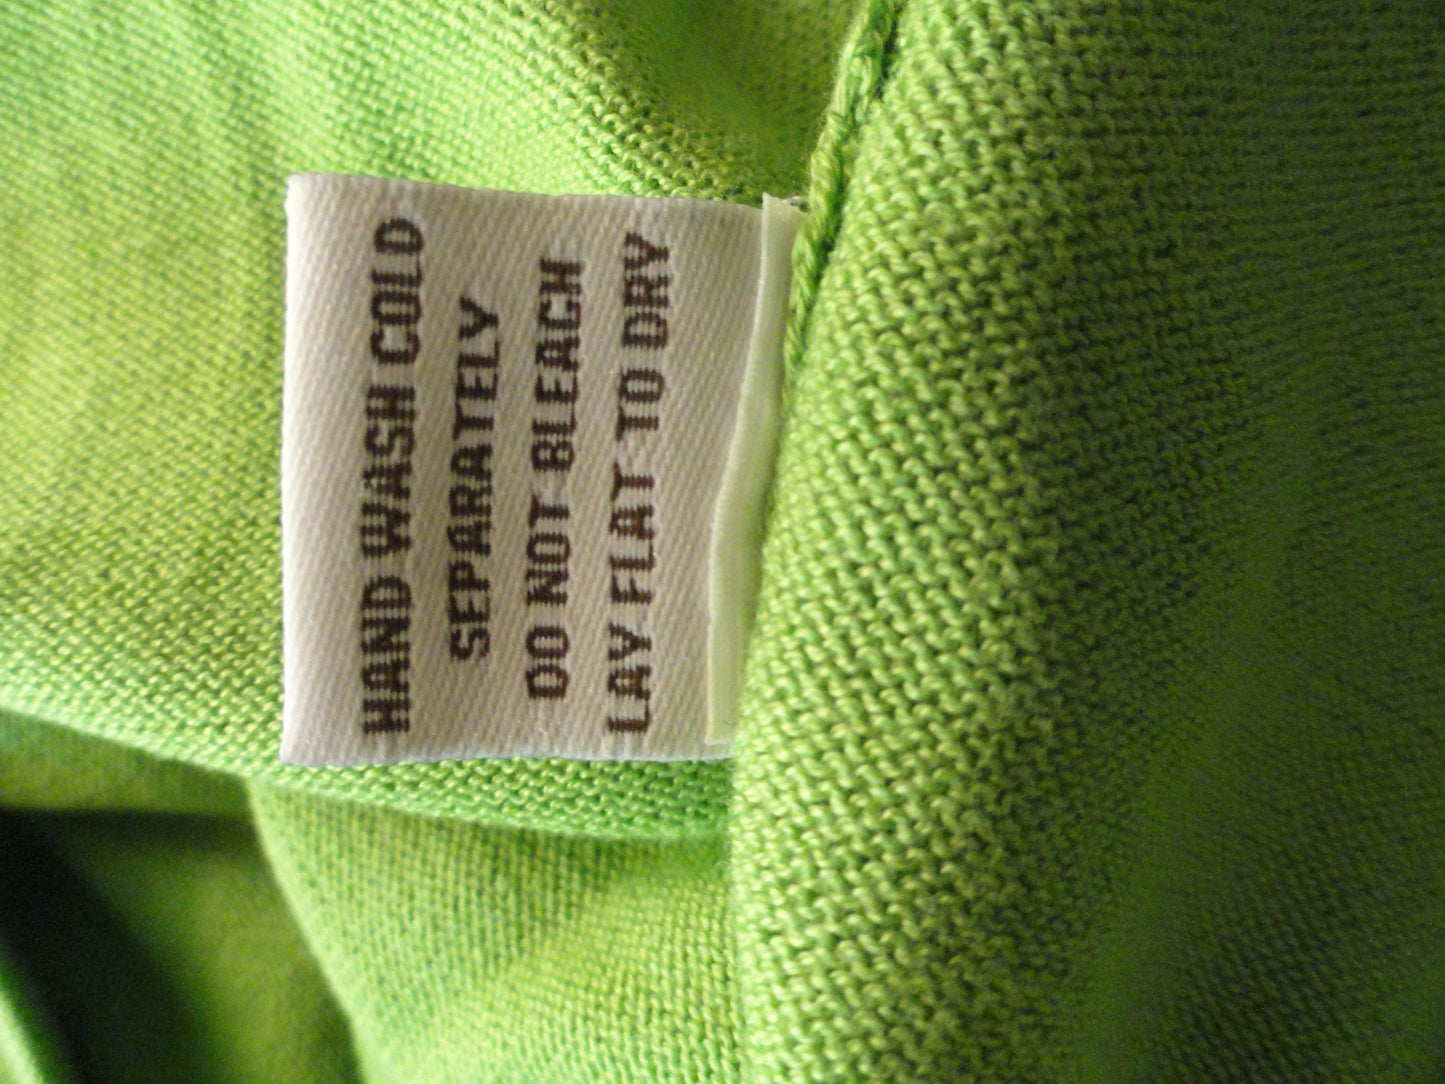 Adrienne Vittadini 80's Lime Green Dress Size L SKU 000123